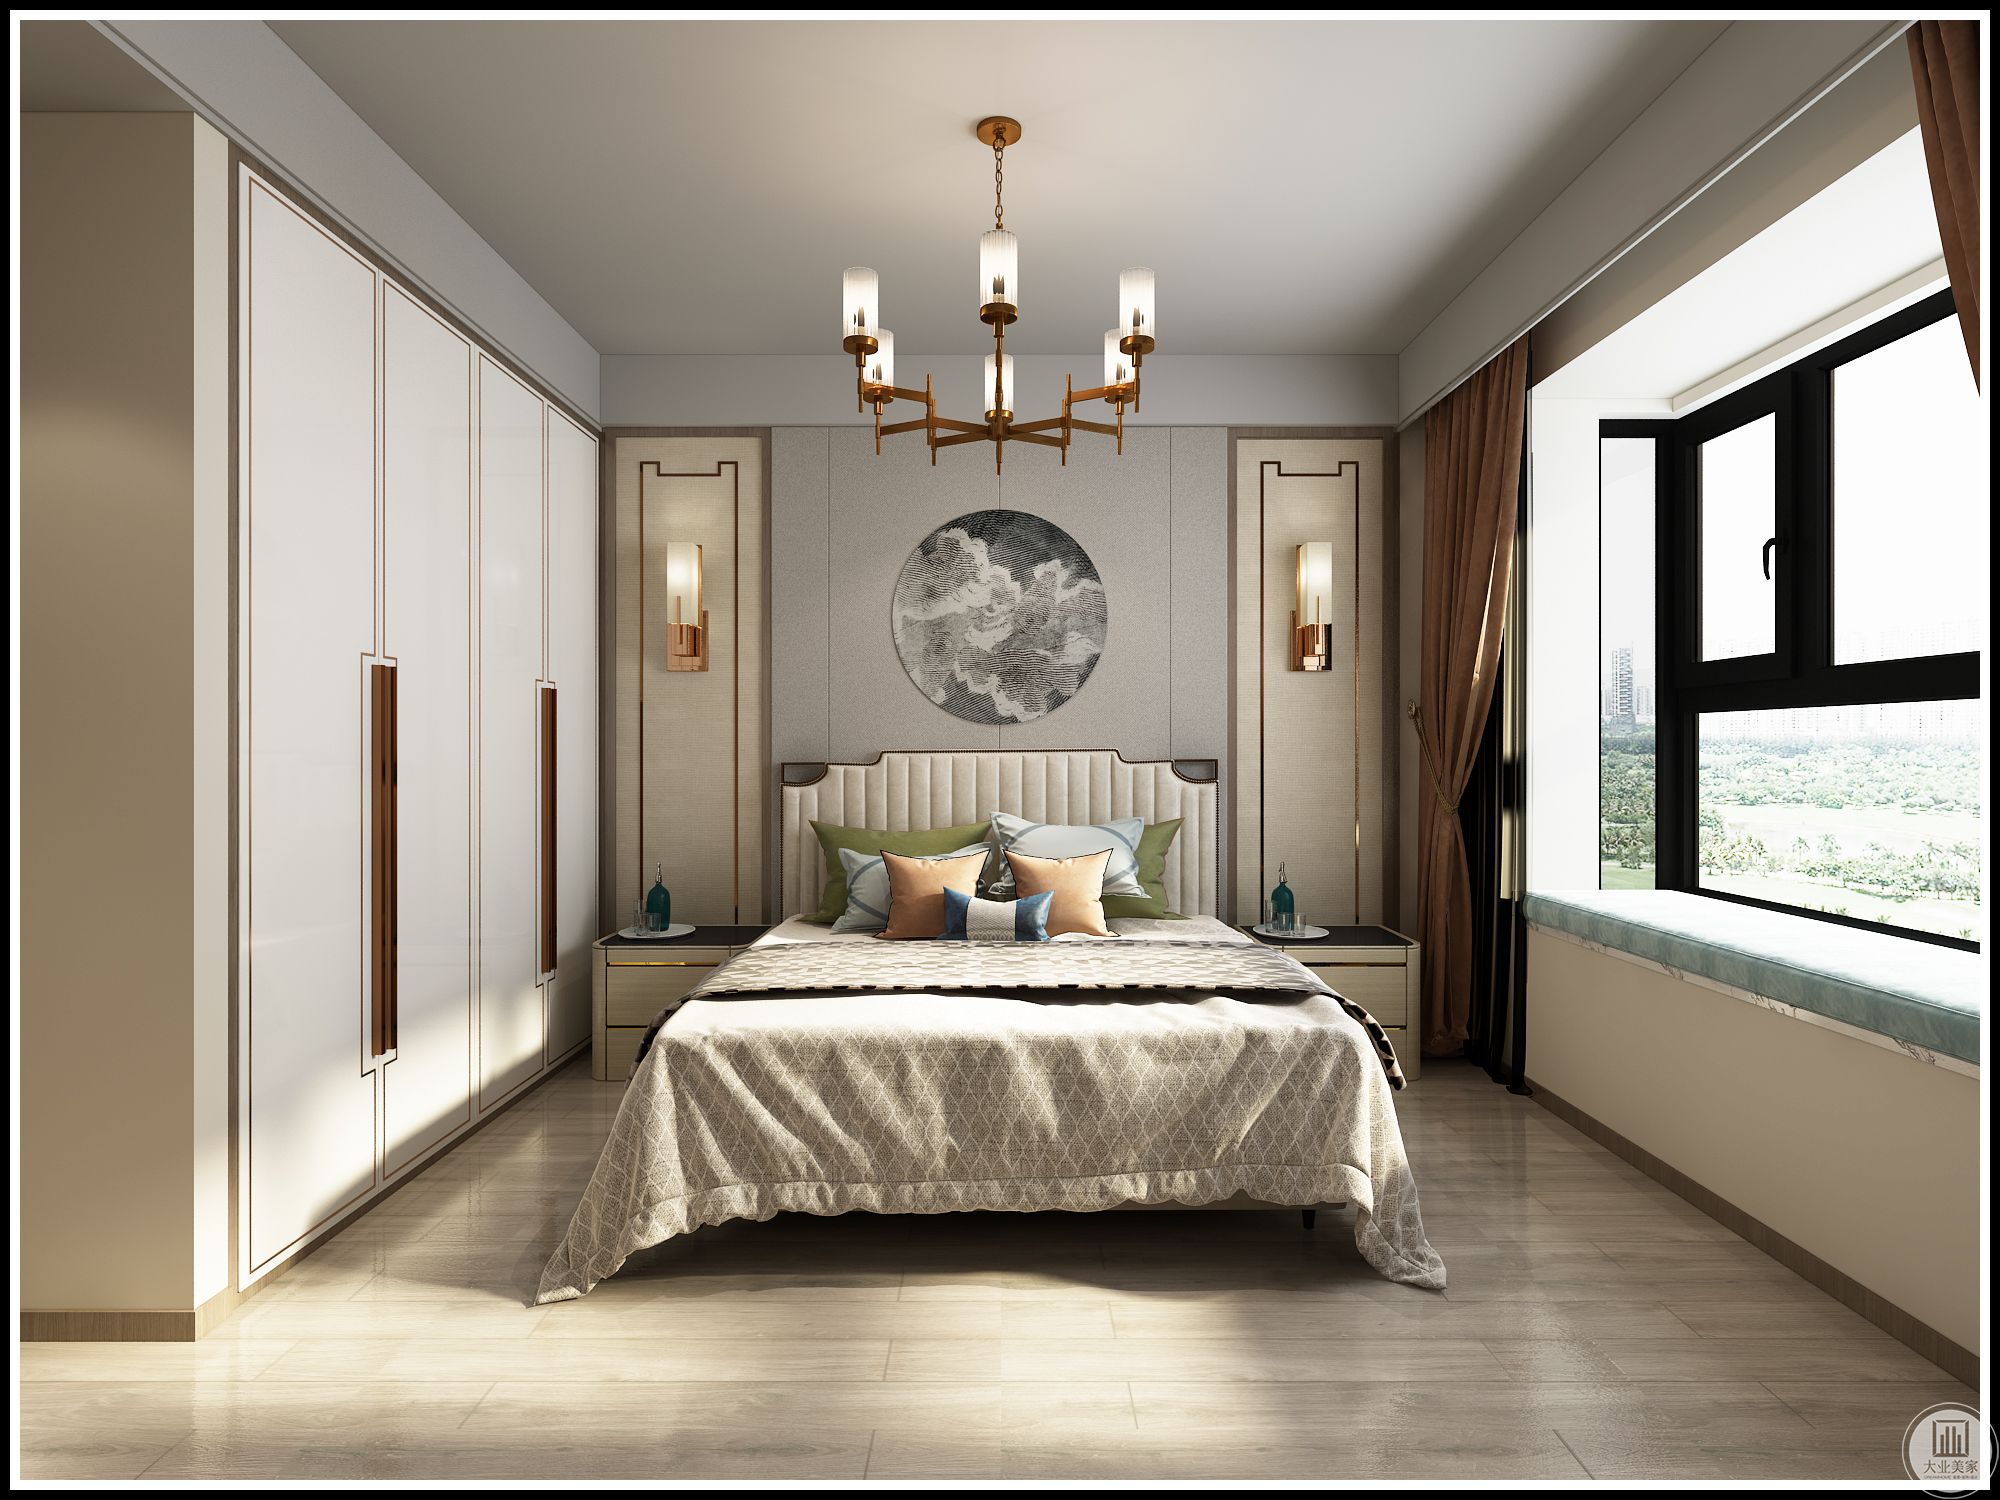 主卧室床头沿用了中式传统对称的设计，中间采用硬包材质提高造型立体感。